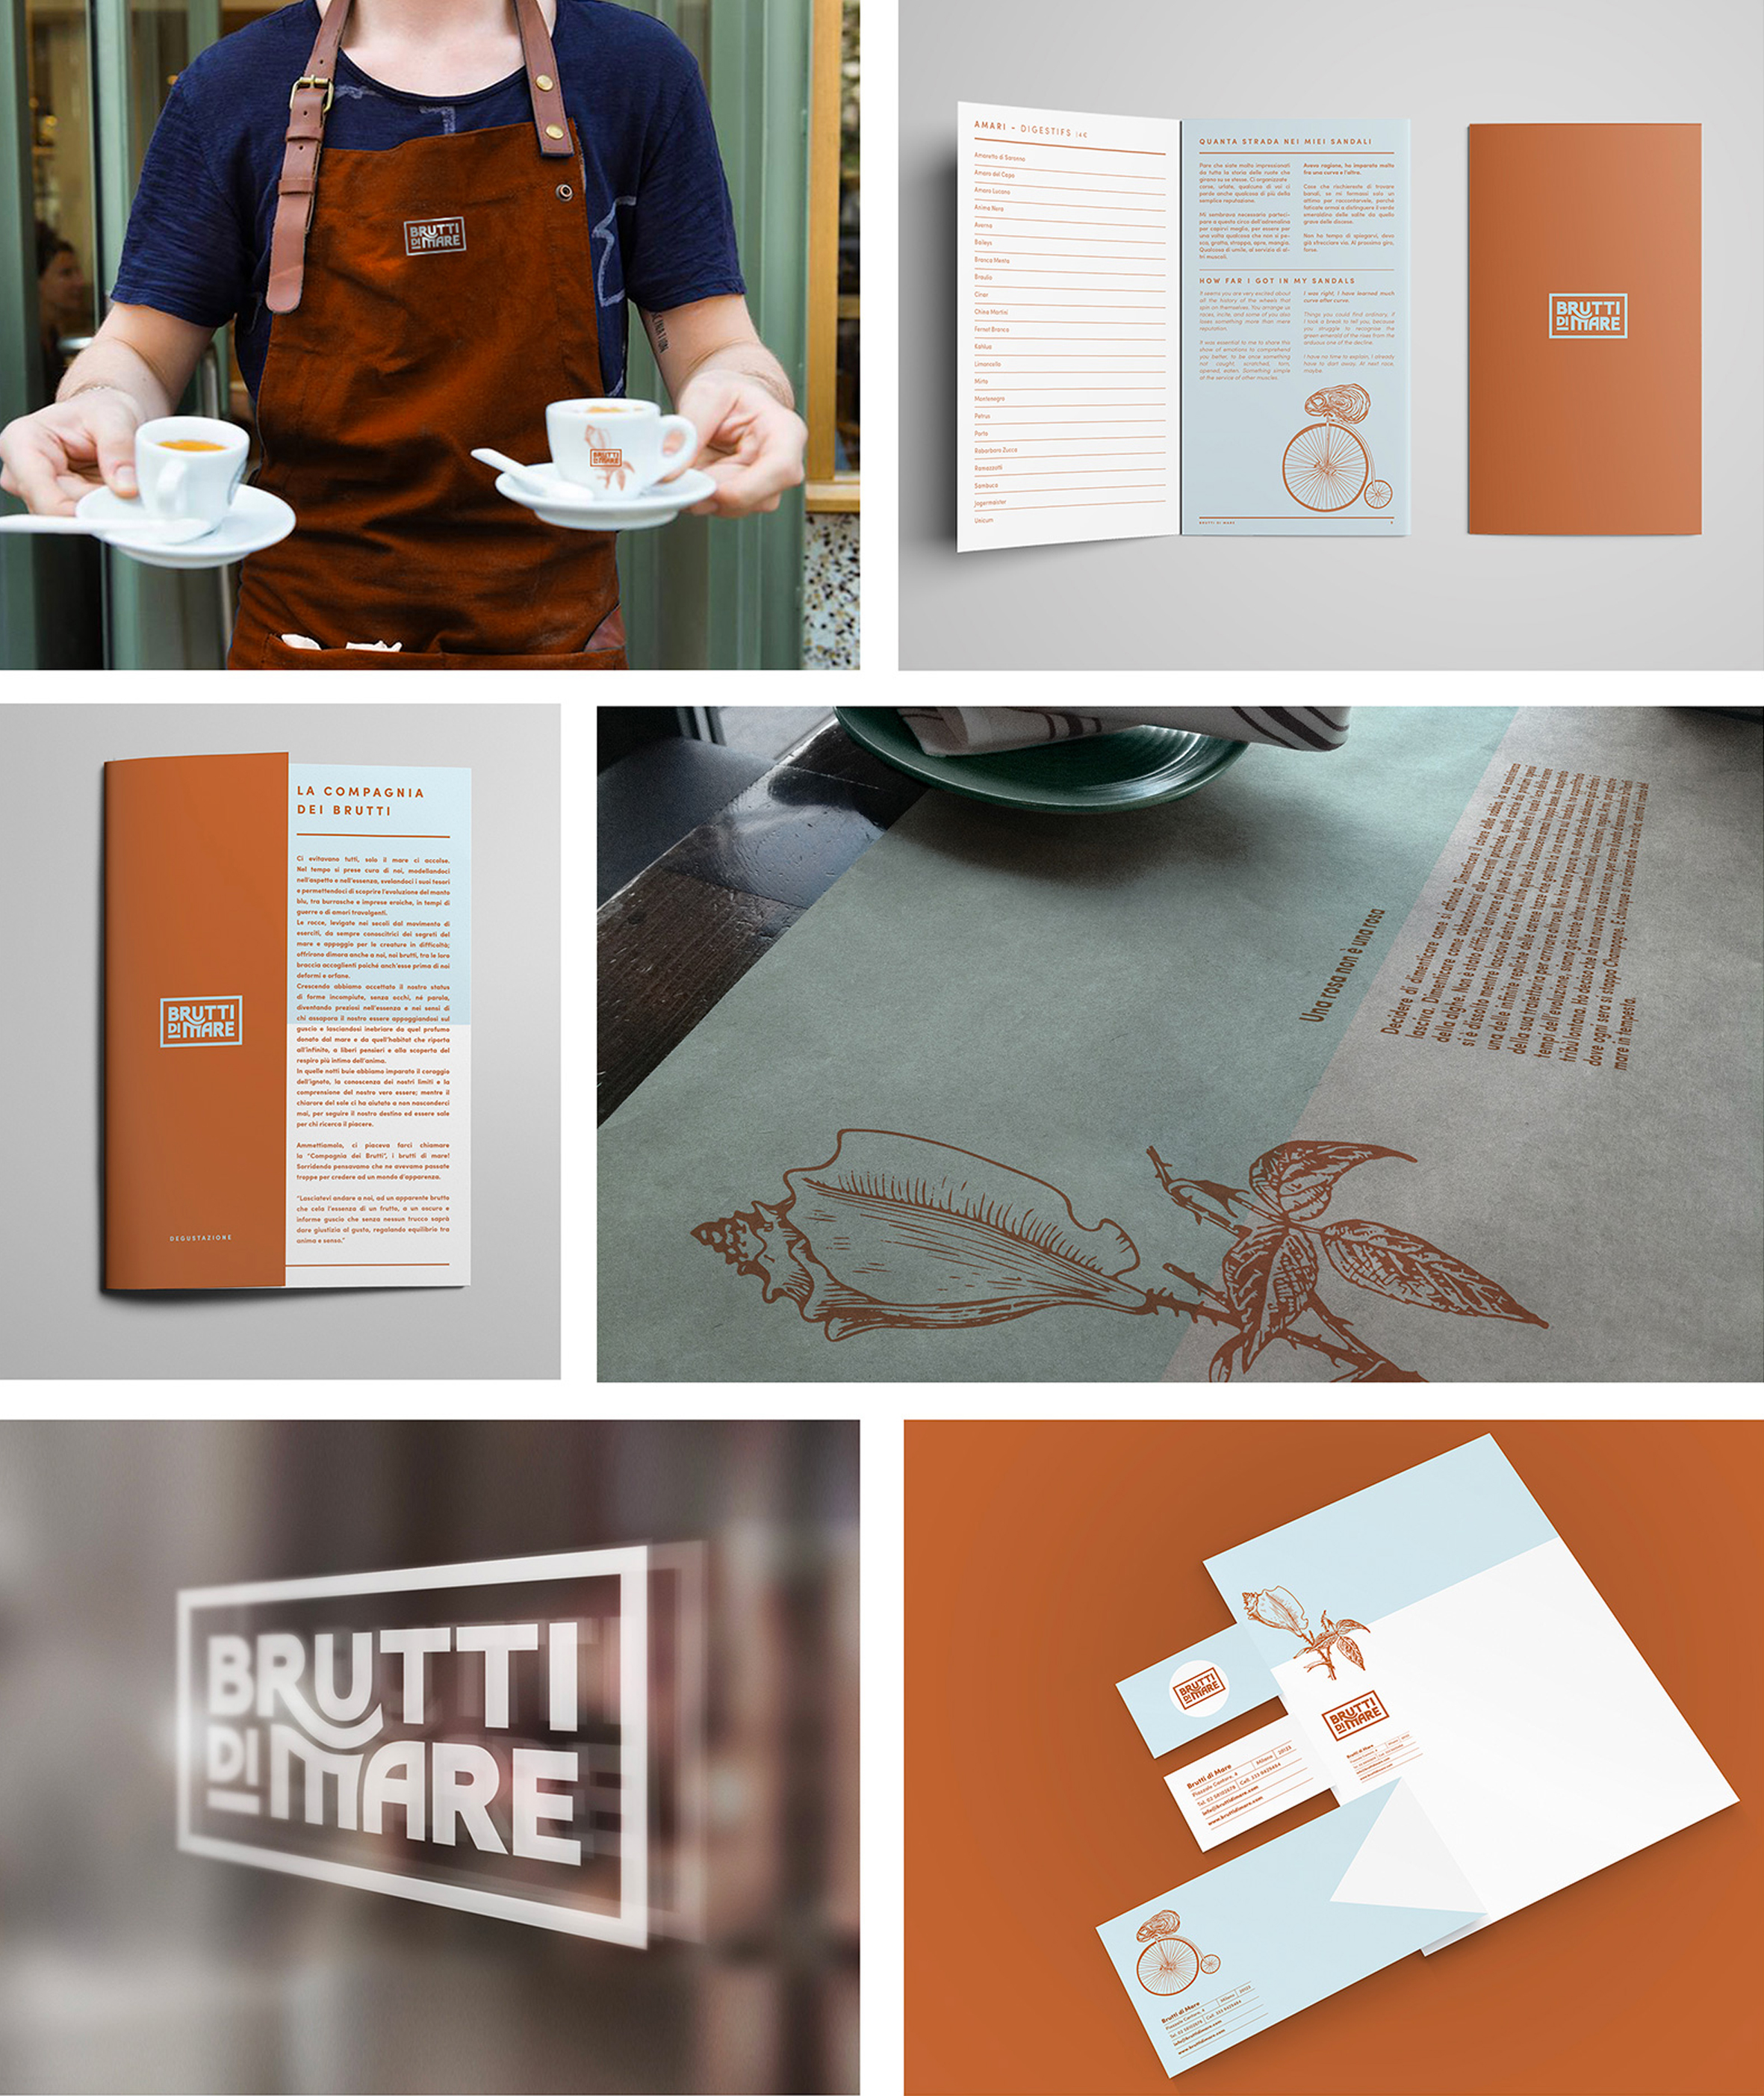 Brutti di Mare海鲜餐厅品牌形象设计